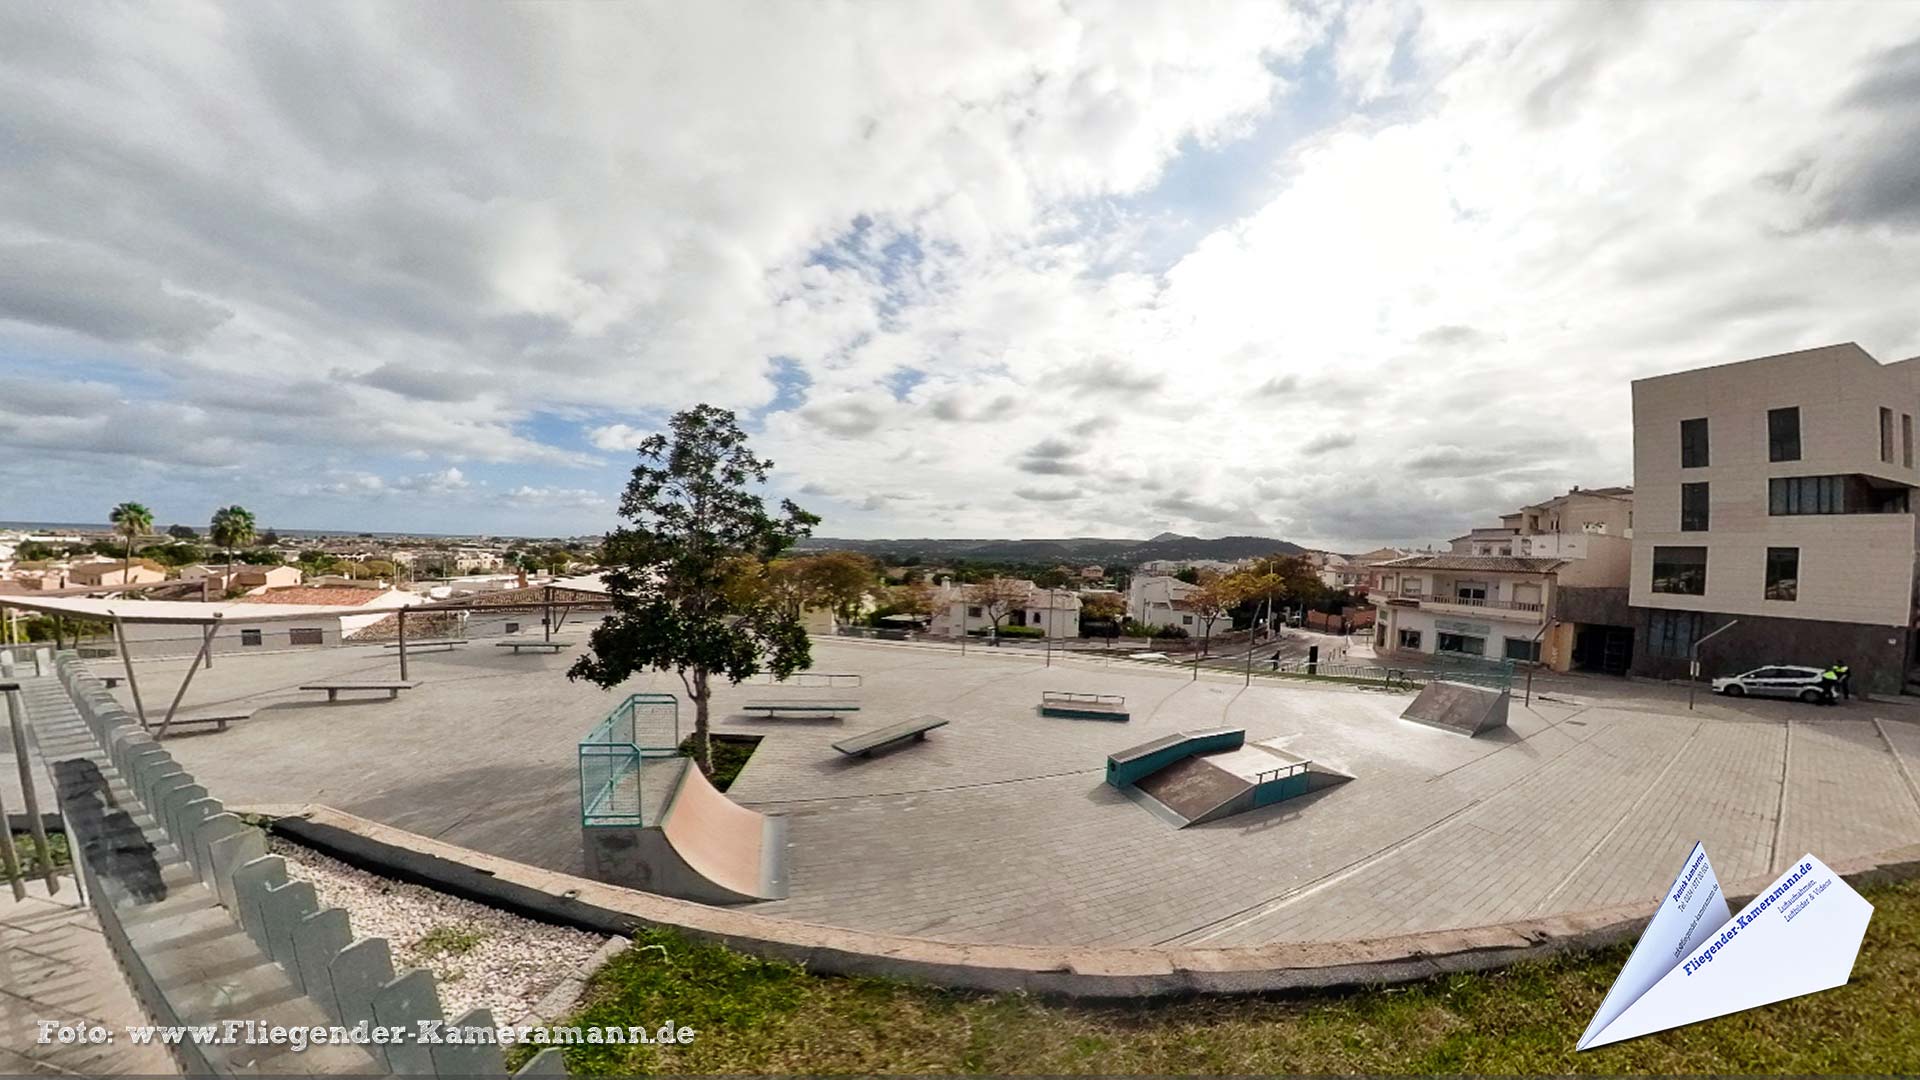 Skatepark Portal del Clot de Jávea/Xàbia (ES) - 360°-Panorama